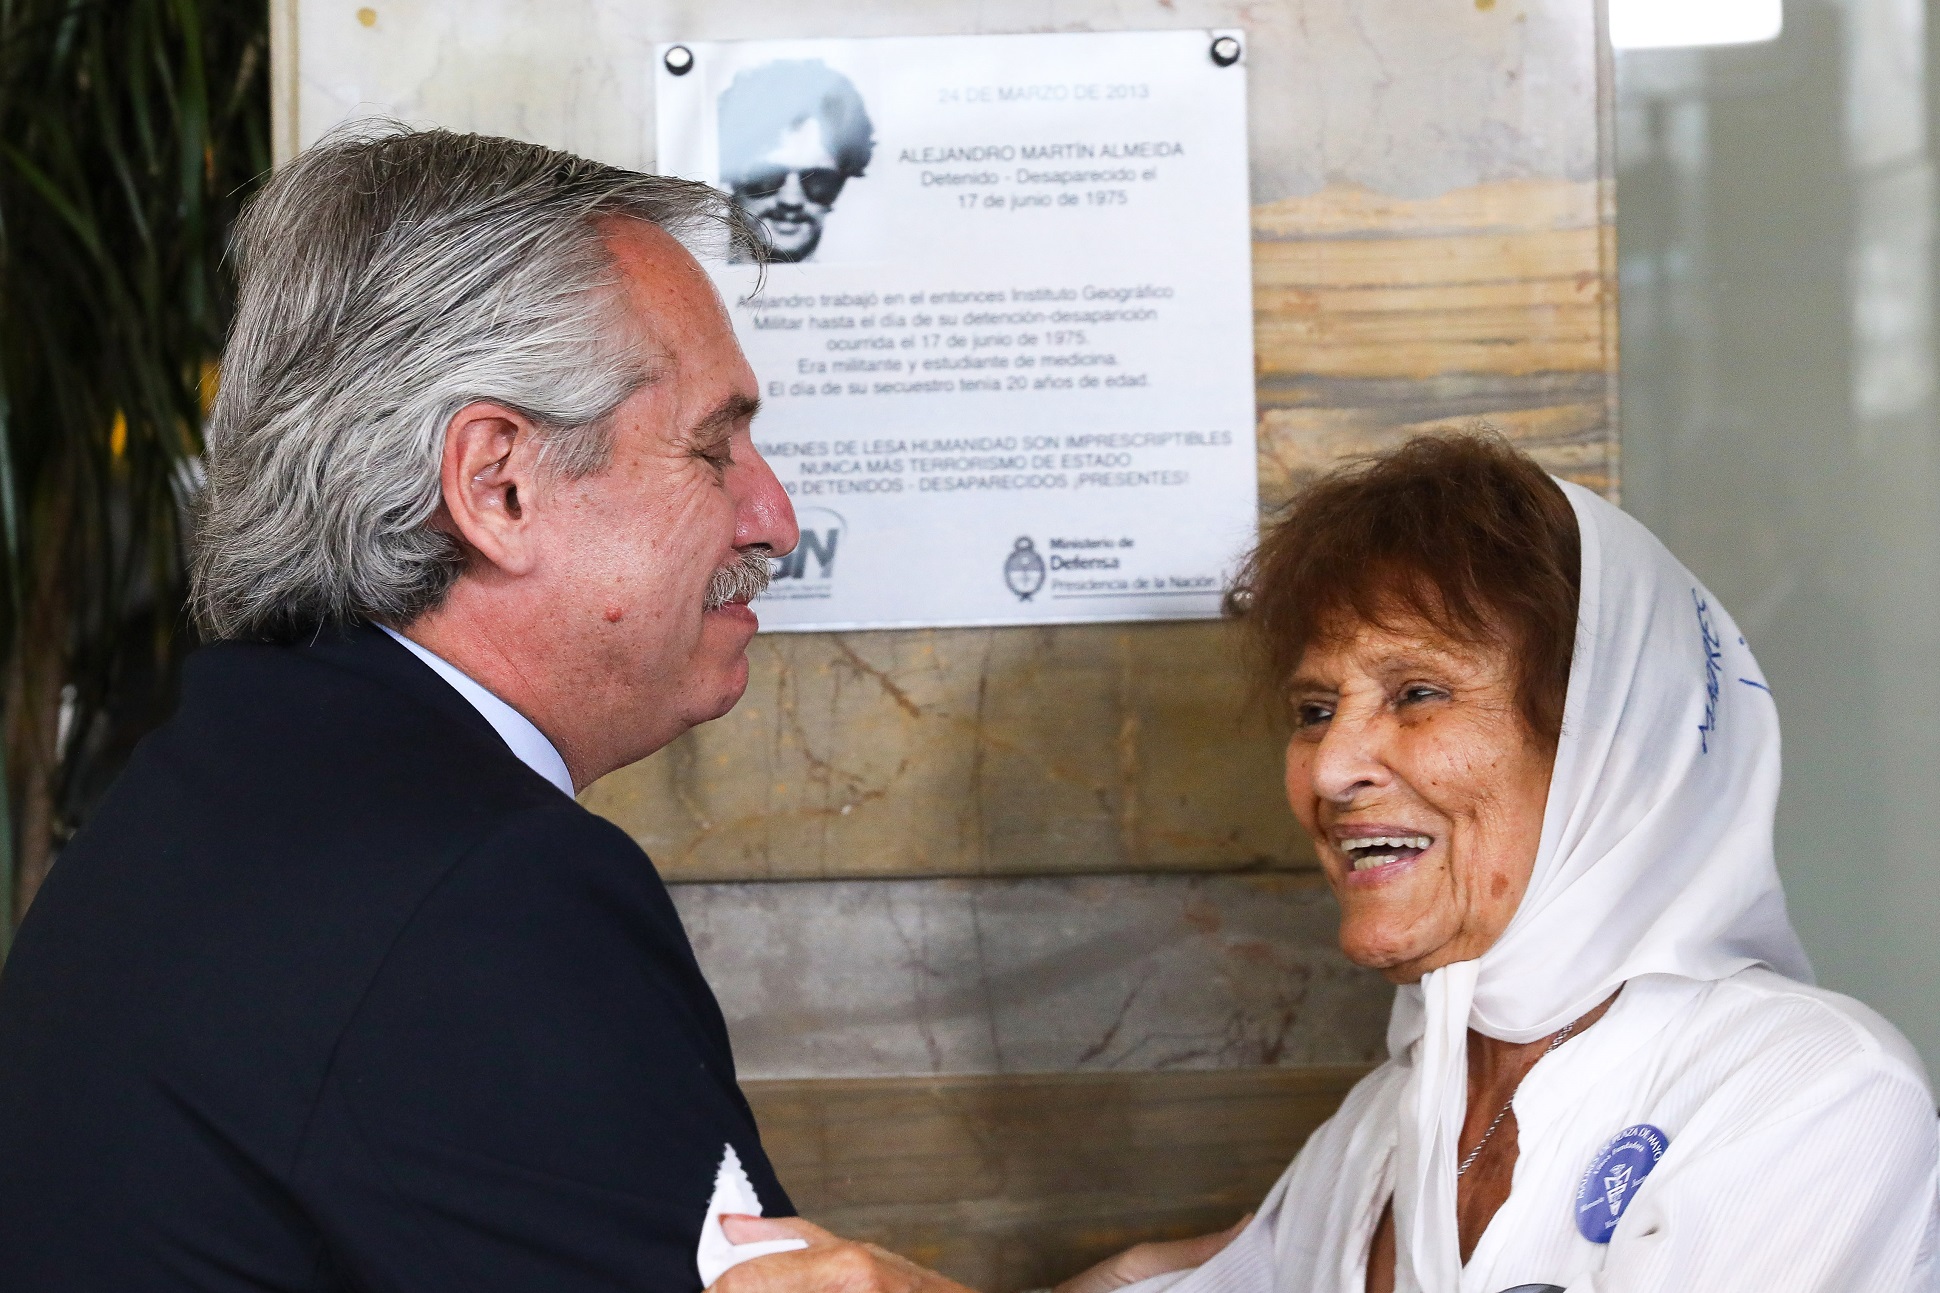 El Presidente participó del acto de restitución de la placa en memoria de Alejandro Almeida